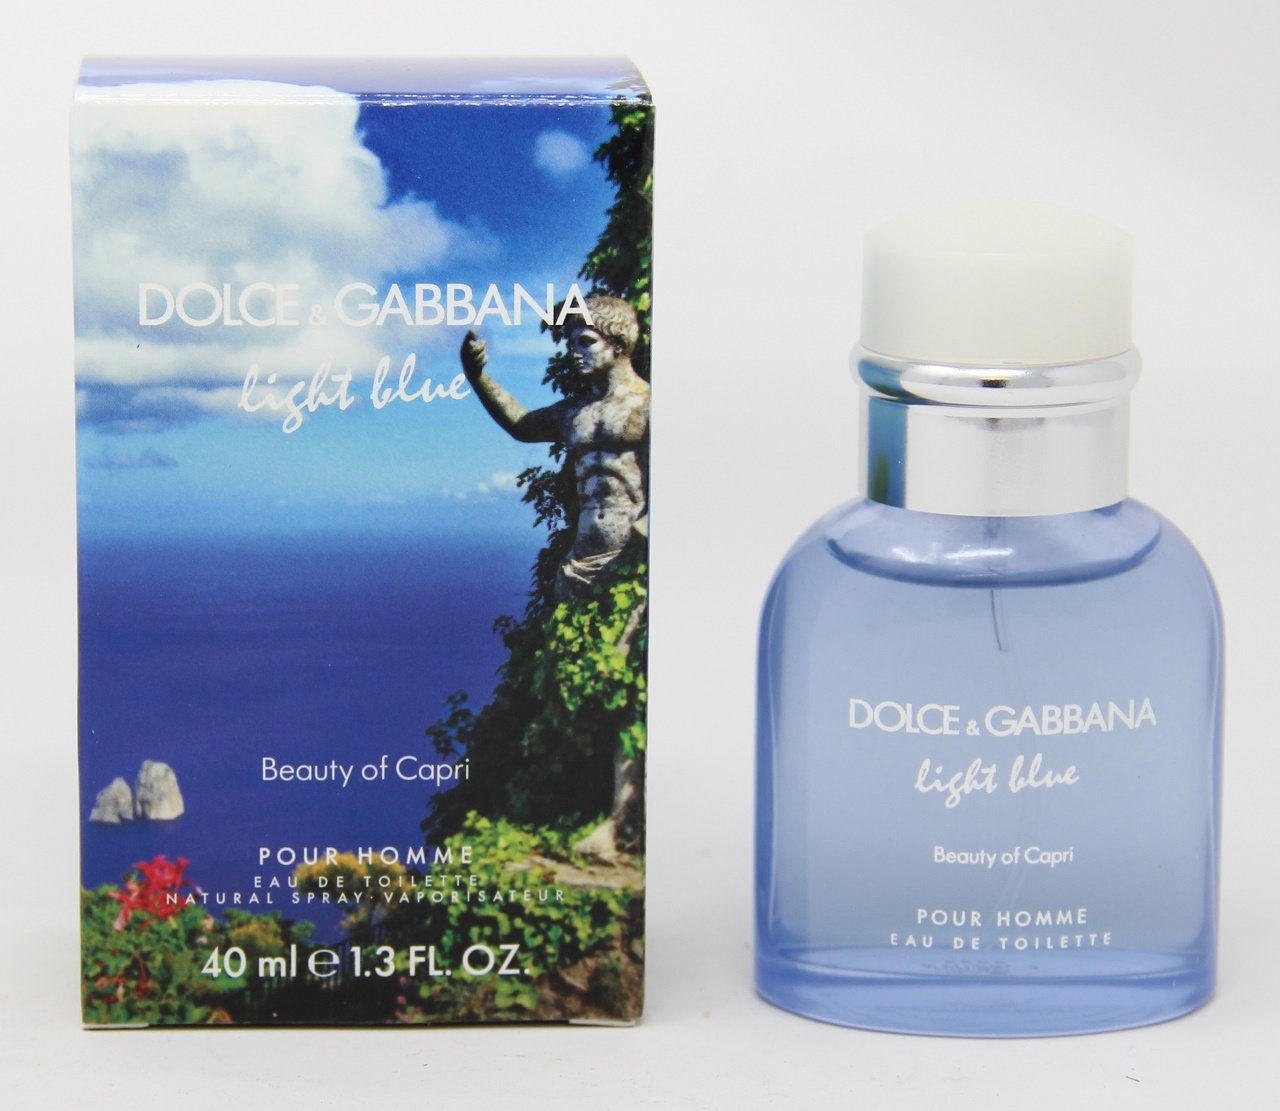 DOLCE & GABBANA Eau de Toilette Dolce & Gabbana Light Blue Beauty of Capri Eau de Toilette vapo 40 ml | Eau de Toilette